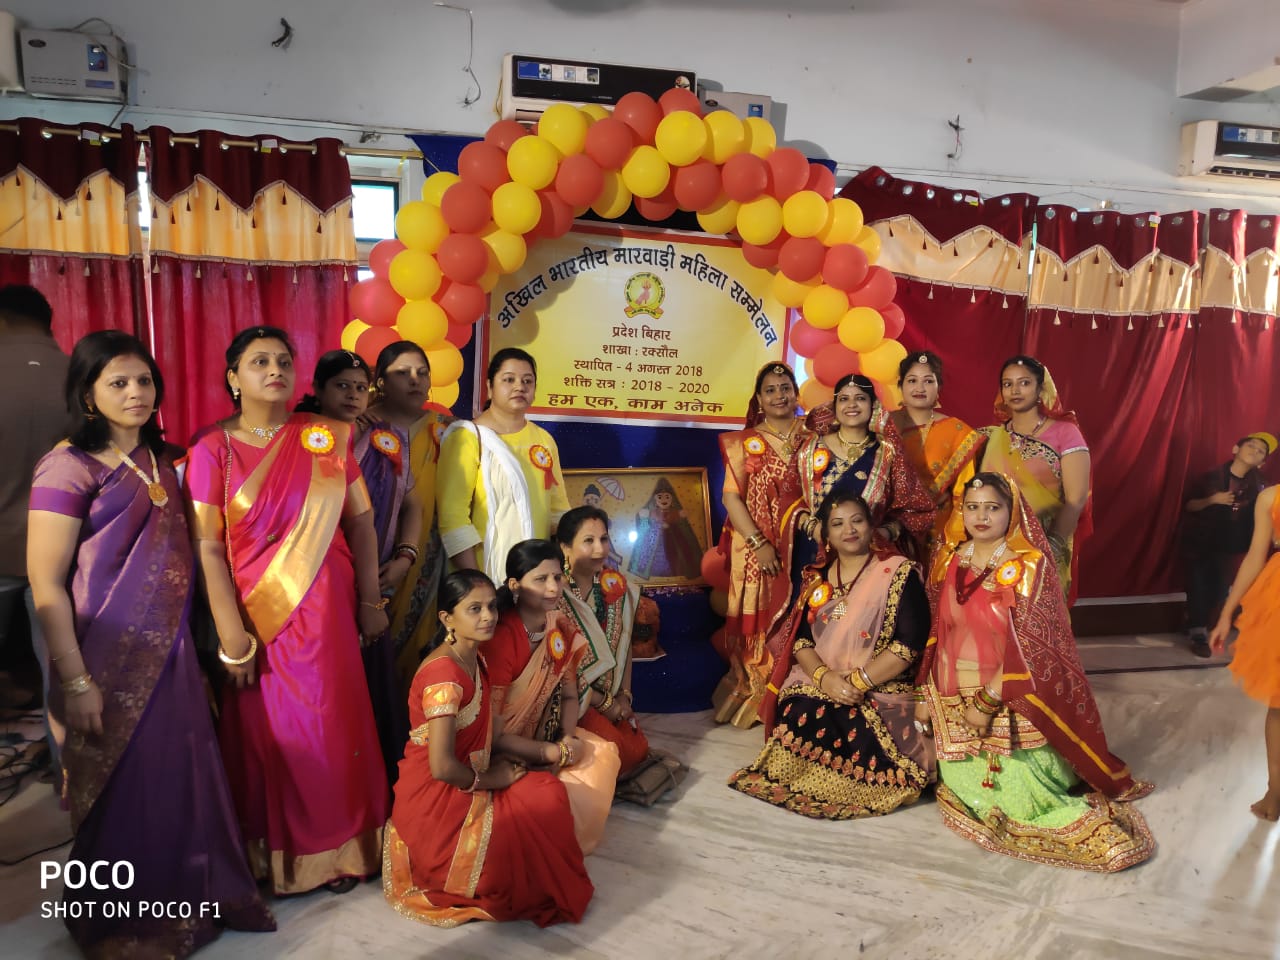 अखिल भारतीय मारवाड़ी सम्मेलन के सिंजारा उत्सव पर गीत नृत्य व प्रतियोगिता आयोजित!